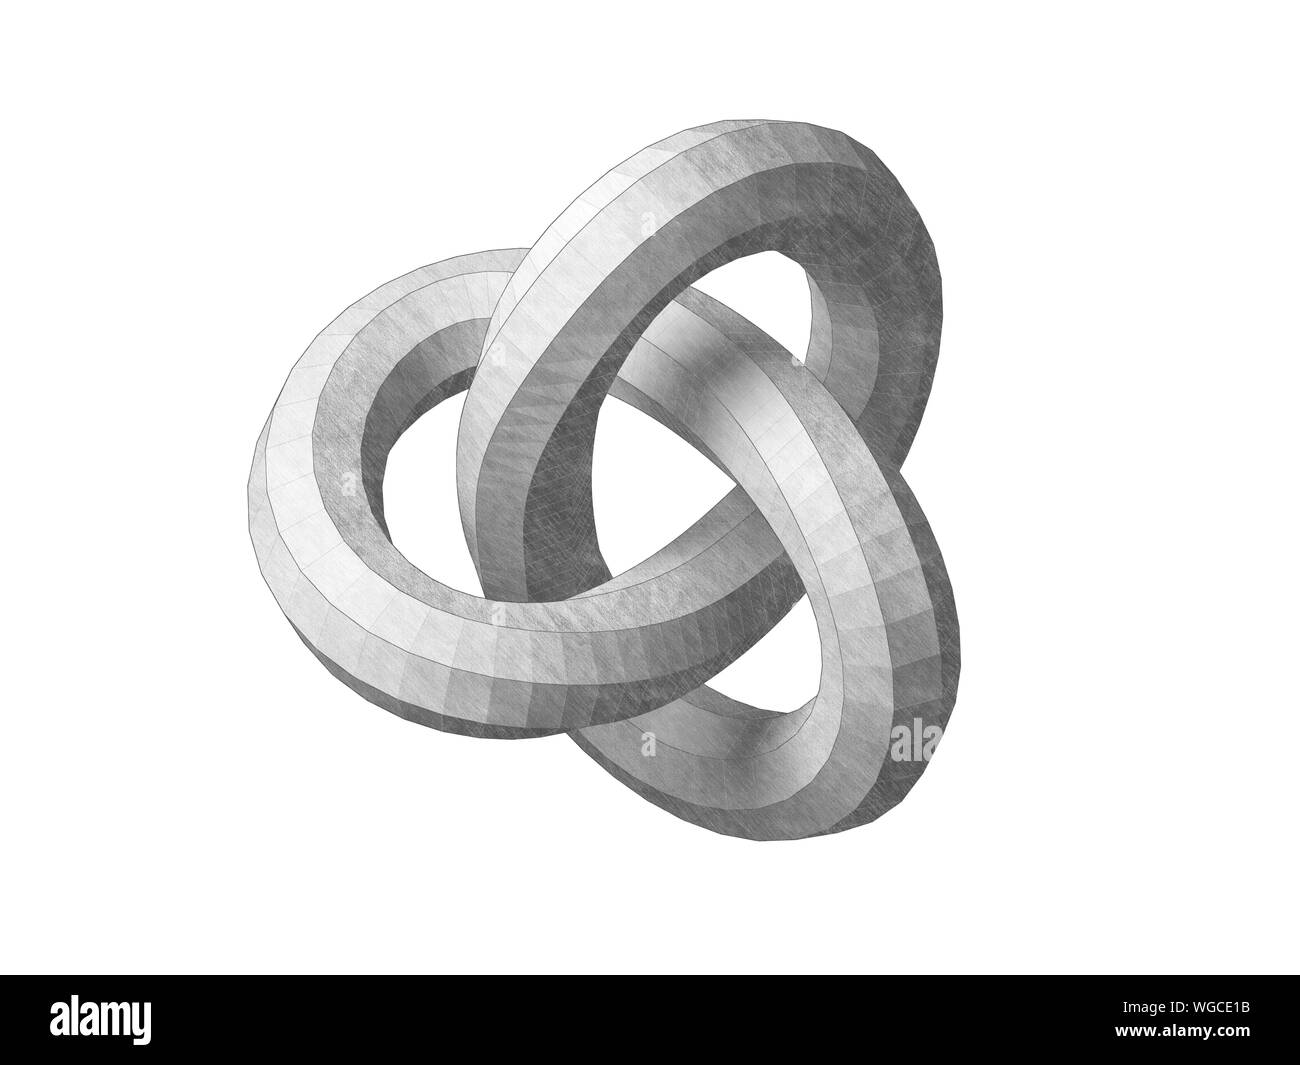 Torus knot poly faible représentation géométrique. Objet abstrait isolé sur fond blanc. Crayon Graphite rendu 3d illustration stylisée Banque D'Images